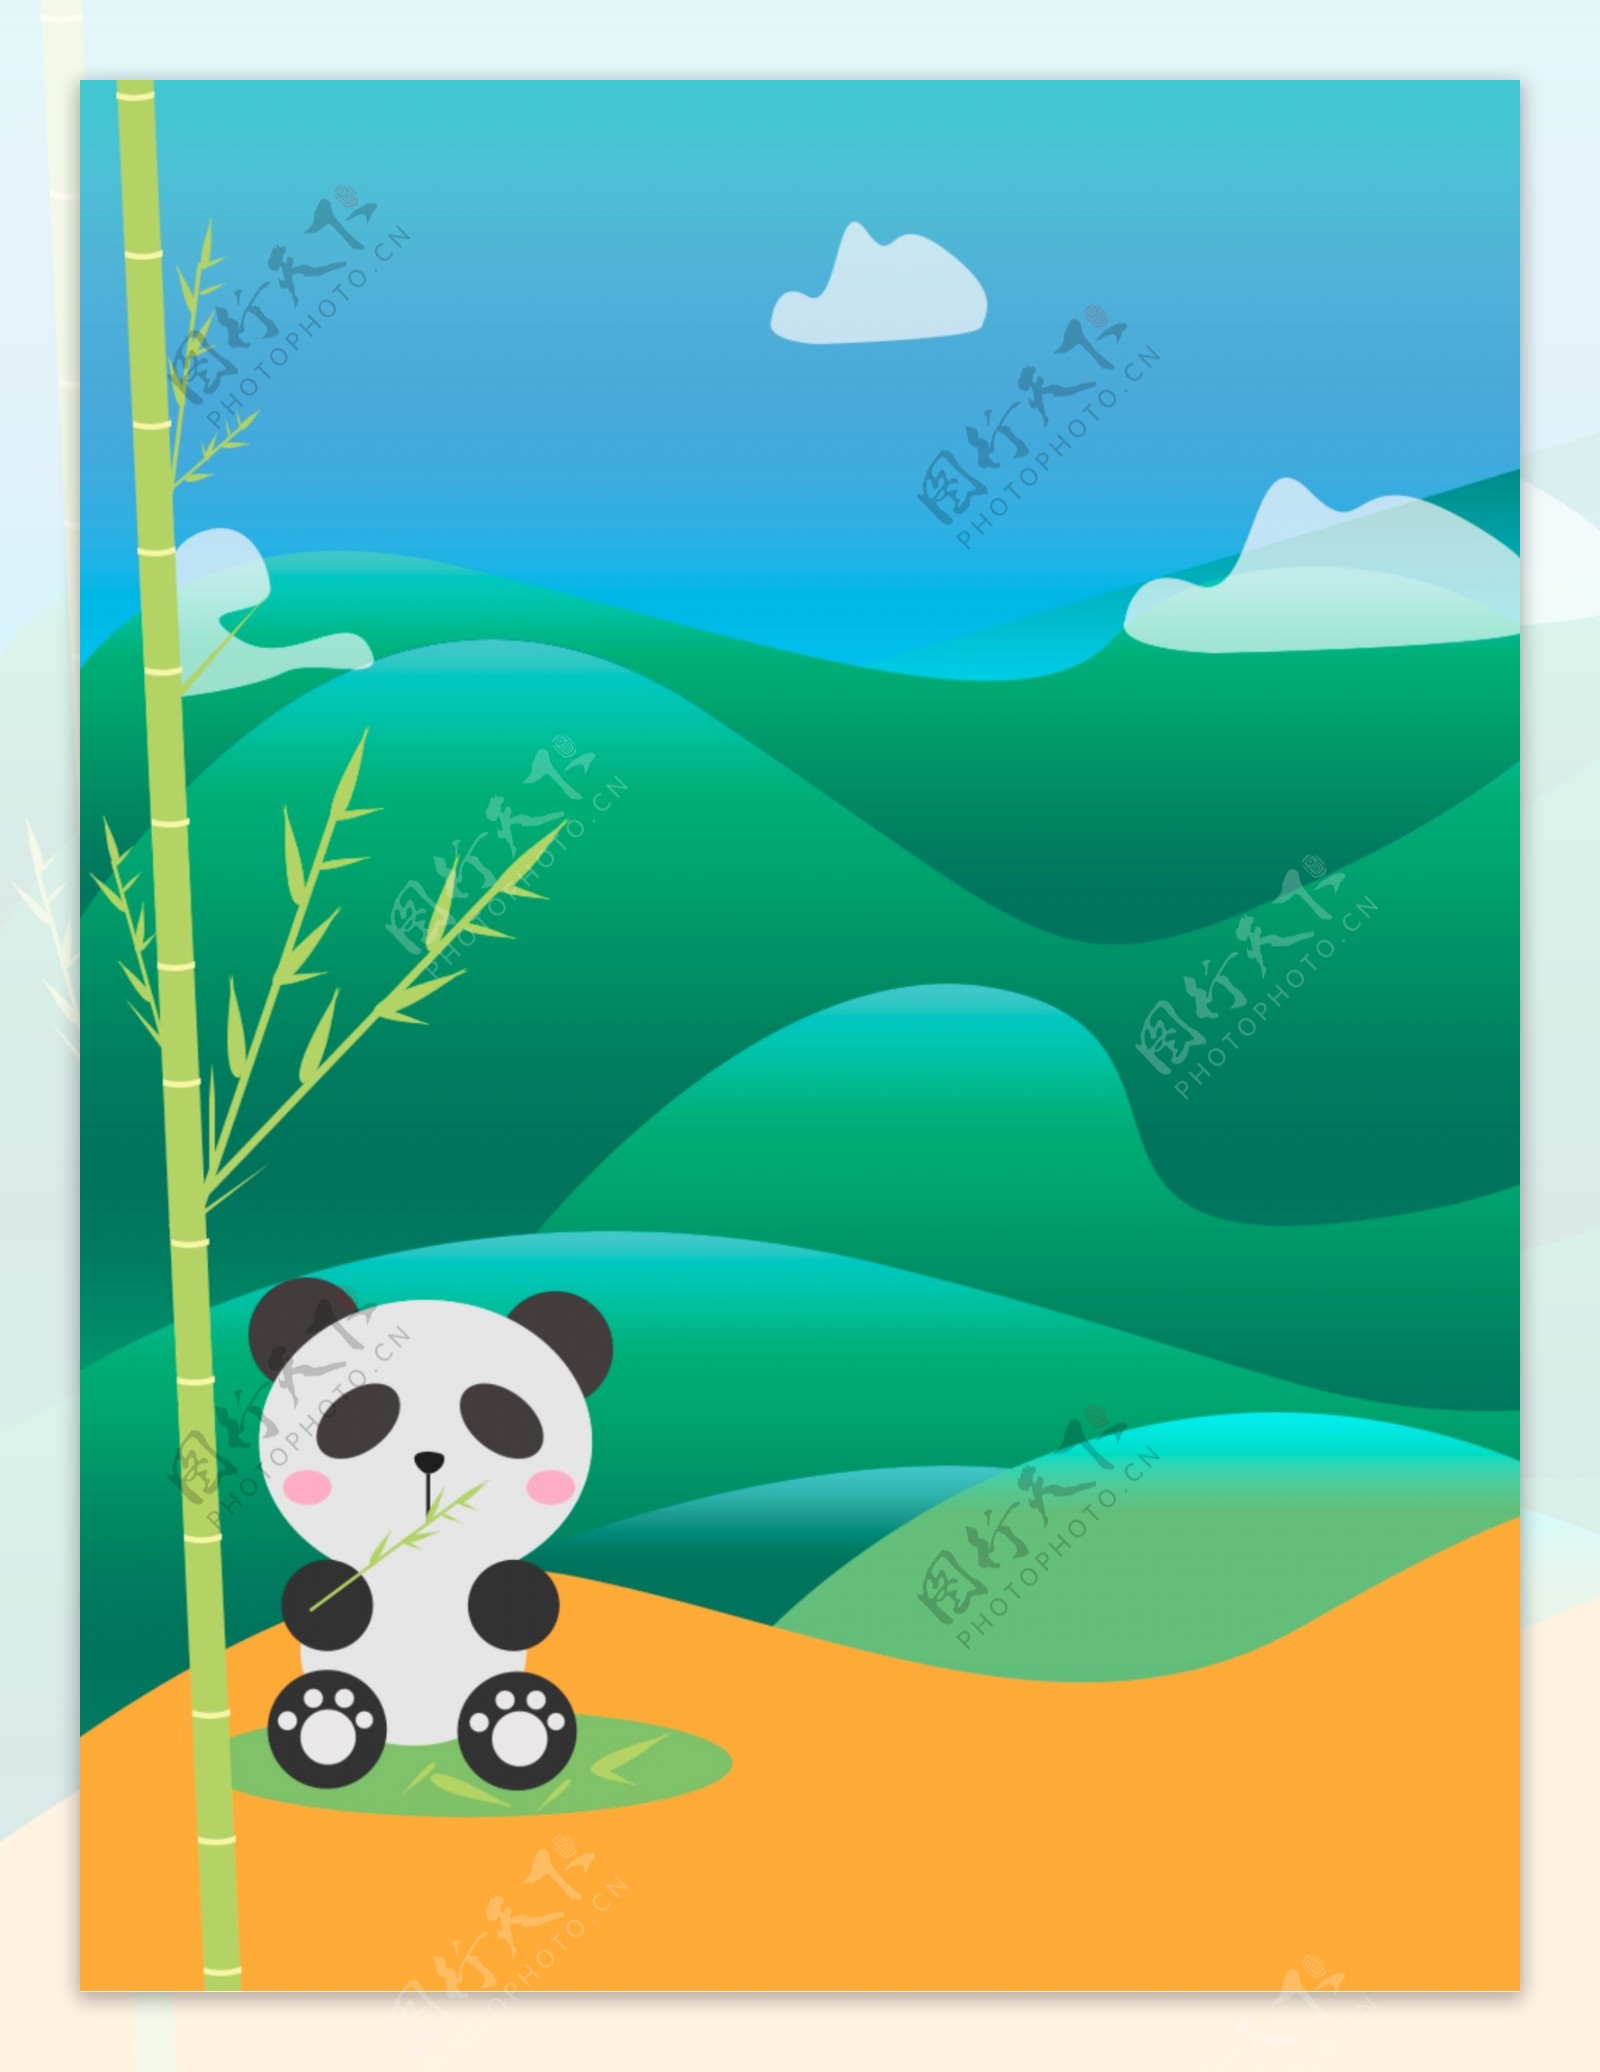 原创手绘熊猫广告背景